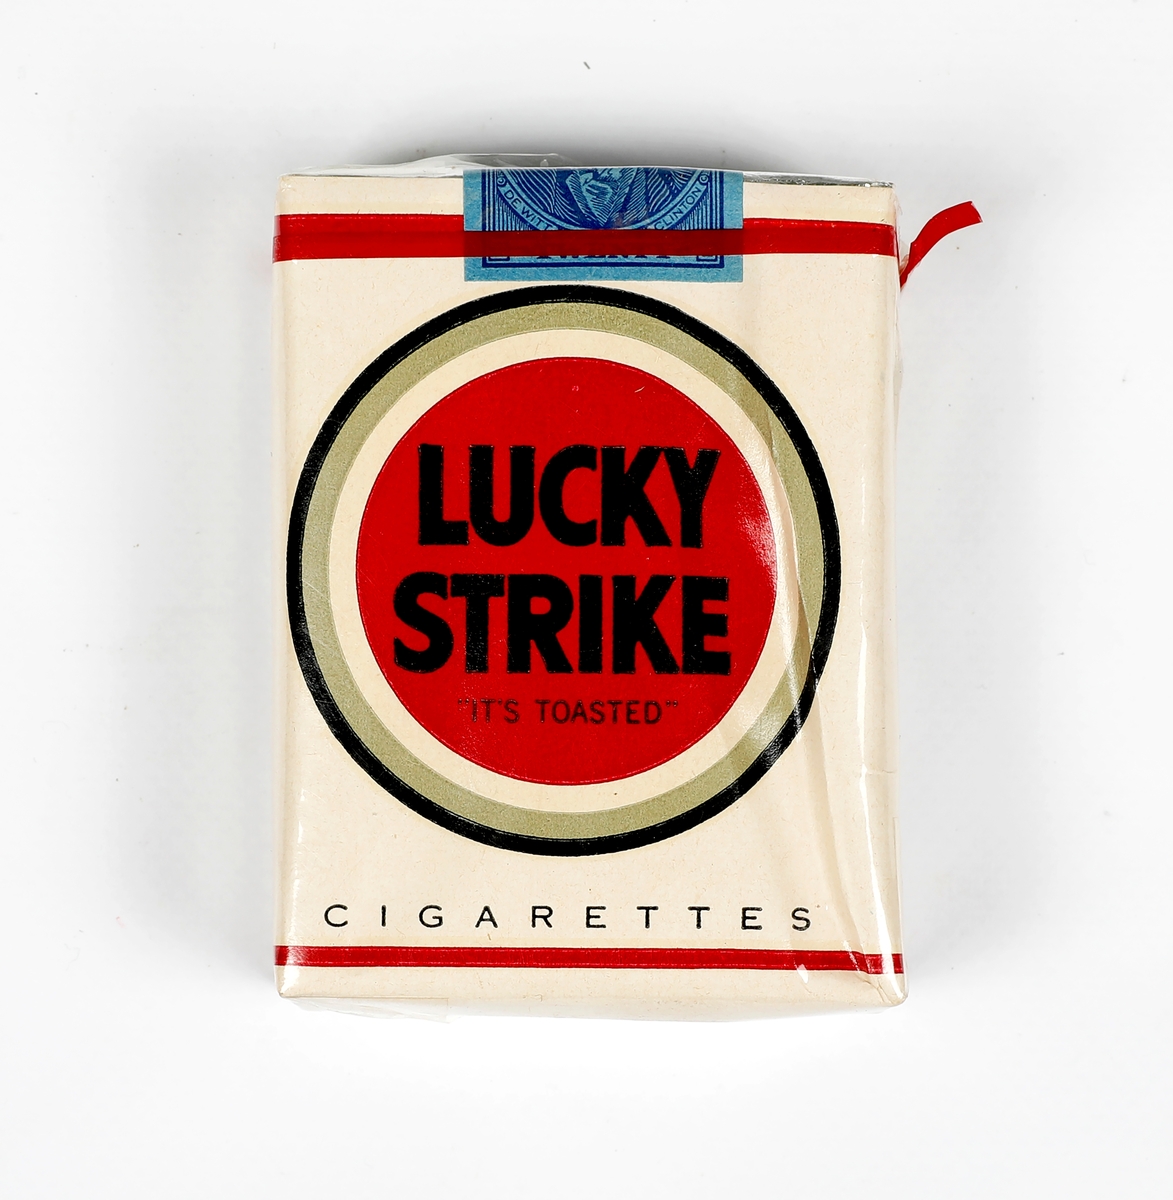 Lucky Strike sigarettpakke med plast rundt. Uåpnet. Fra Stay Behind lageret.